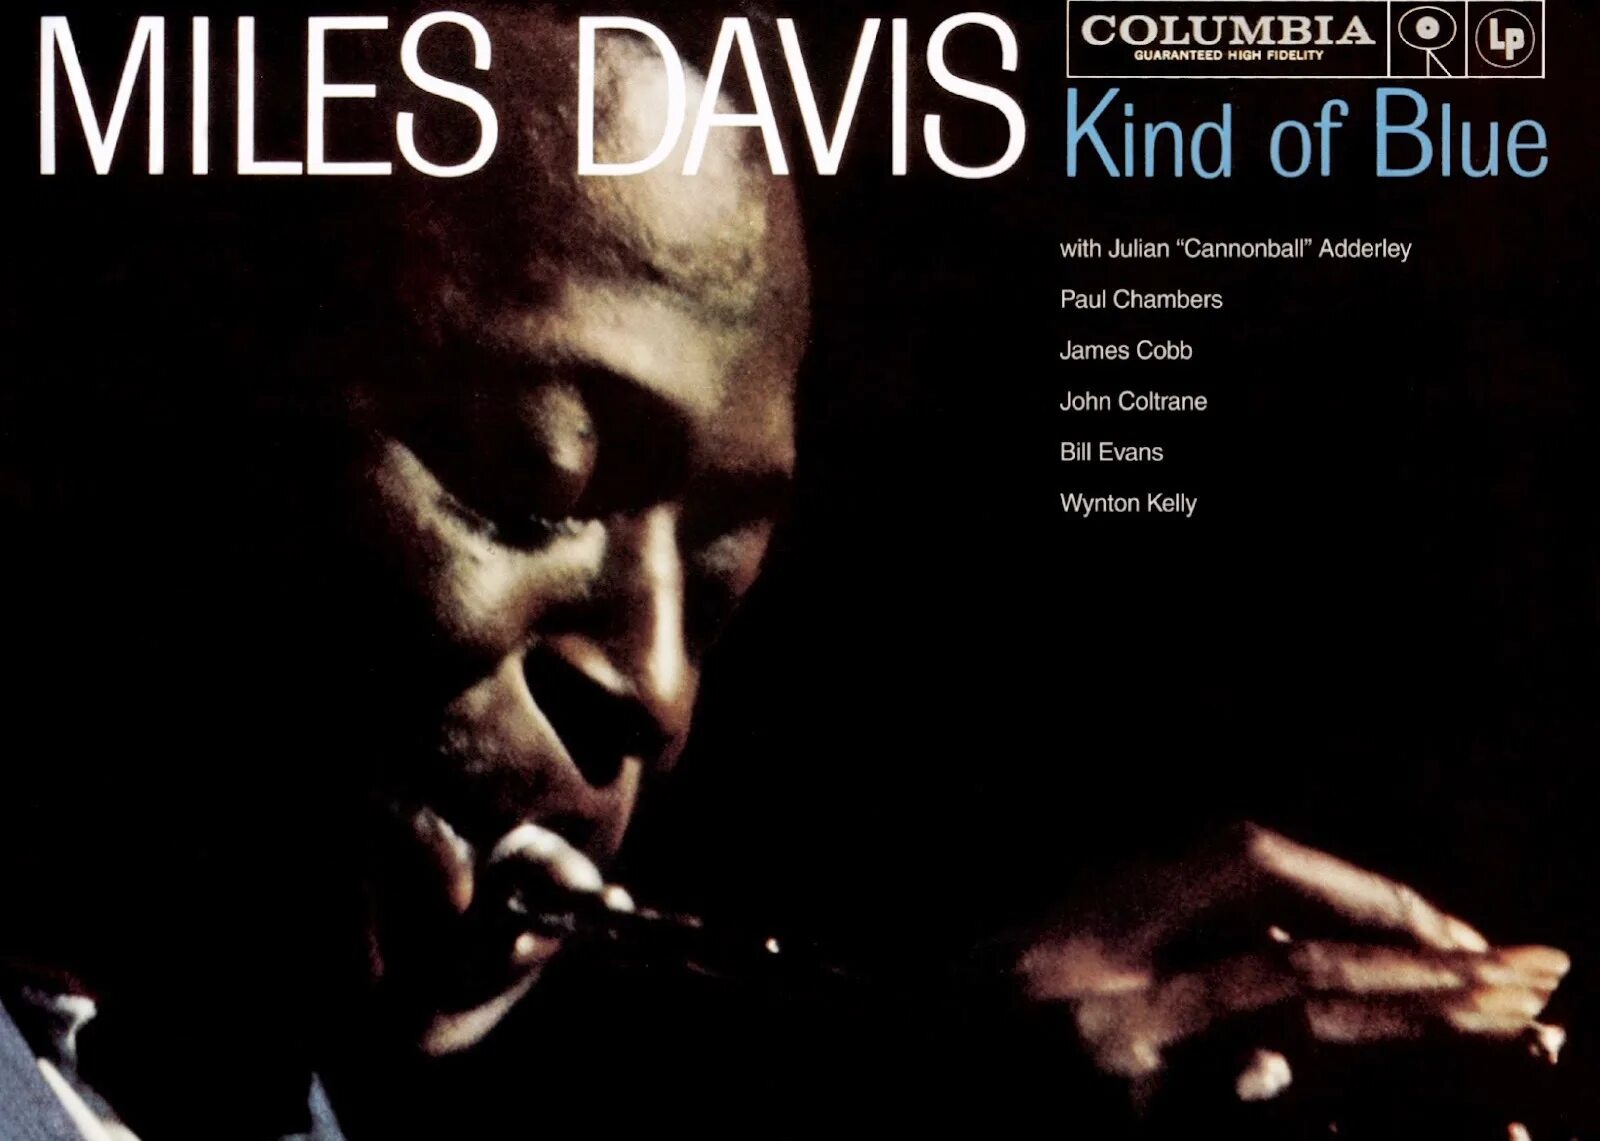 Kind of Blue Майлз Дэвис. Miles Davis - kind of Blue. Miles Davis - kind of Blue (1959). Miles Davis - kind of Blue (Full album) 1959.